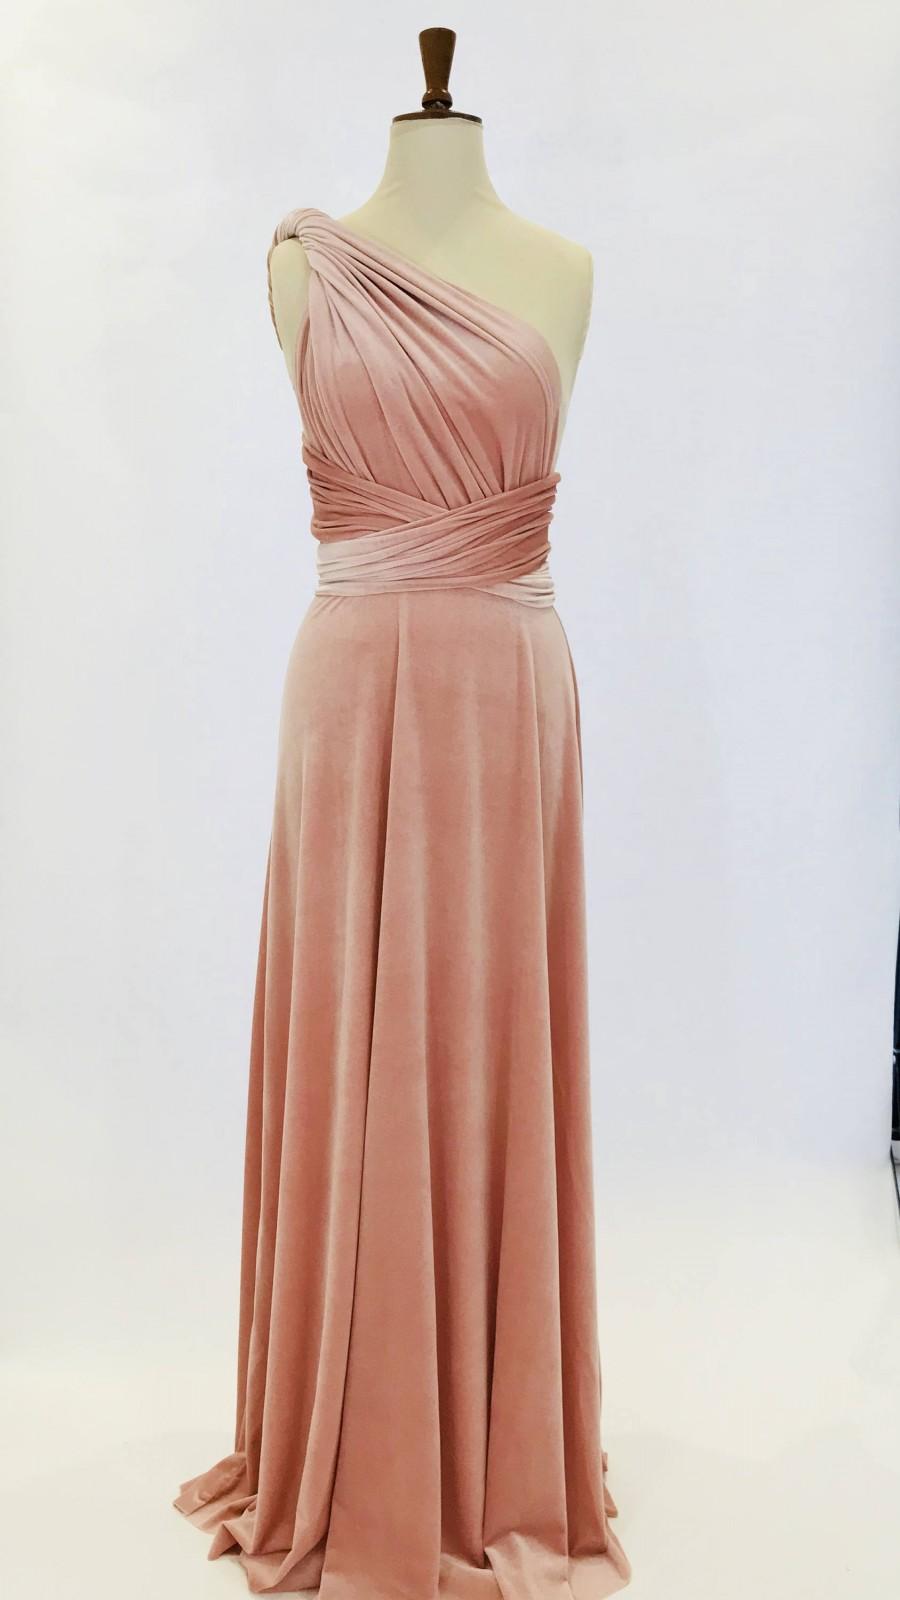 زفاف - Blush pink velvet dress, infinity dress, bridesmaid dress, prom dress, multiway dress, long dress, evening dress, convertible dress